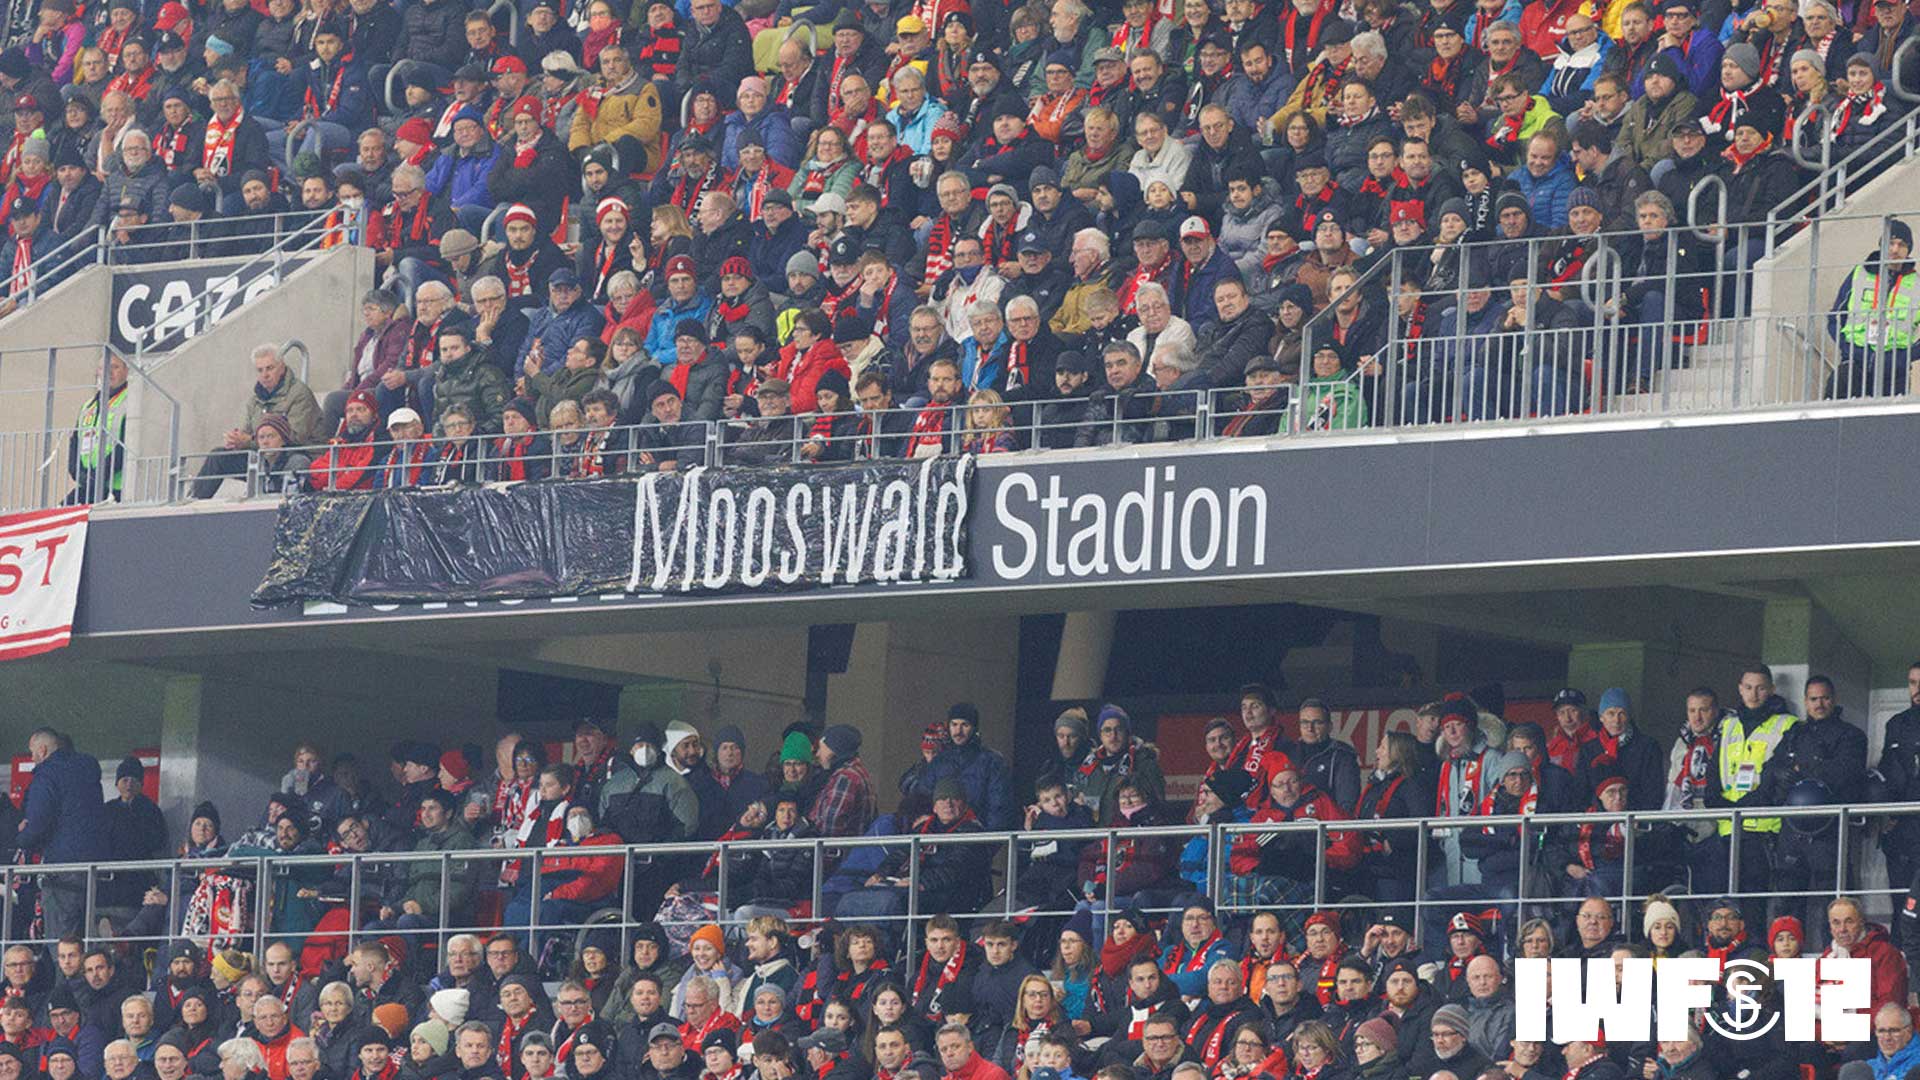 Spruchband beim Heimspiel gegen Union welche den Schriftzug Europapark-Stadion überdeckt und durch Mooswaldstadion ersetzt.